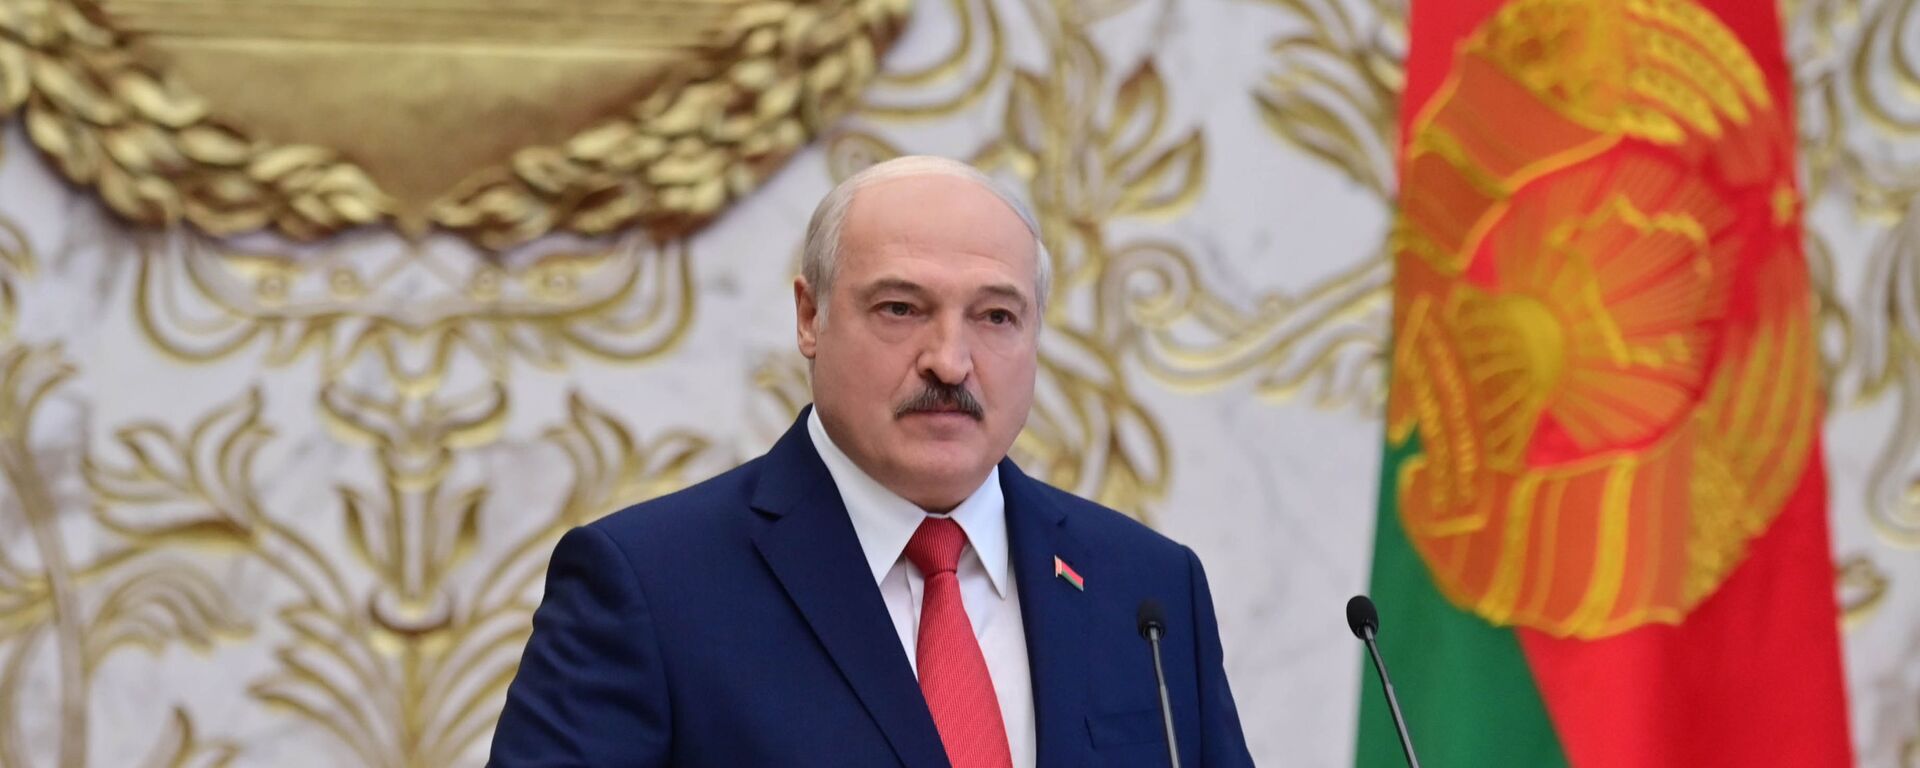 La investidura de Alexandr Lukashenko en Bielorrusia - Sputnik Mundo, 1920, 07.09.2021